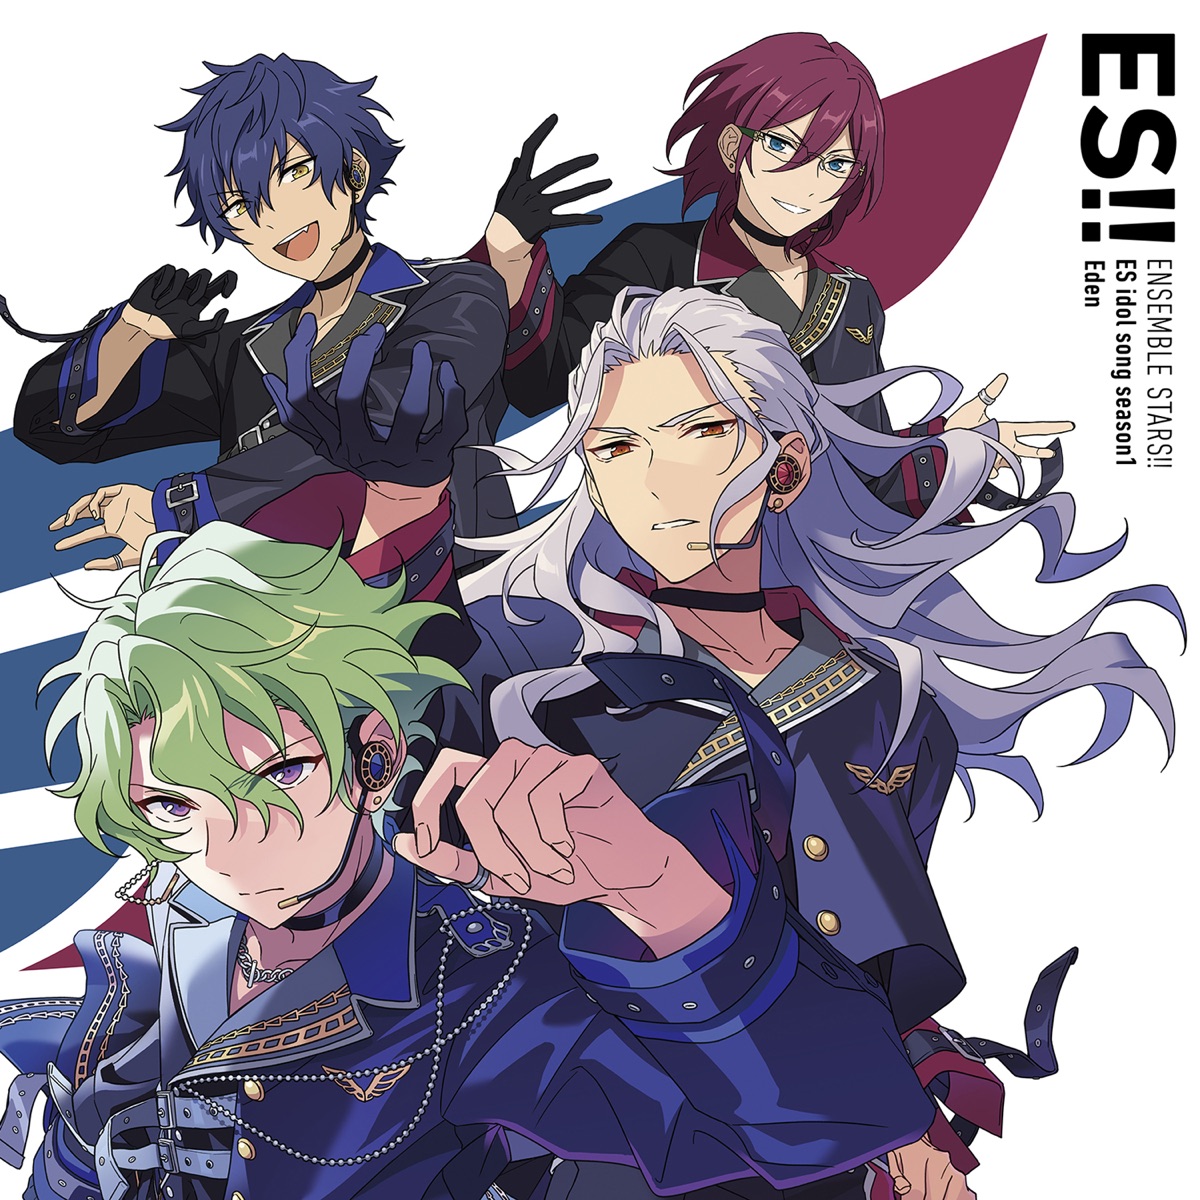 Cover for『Eden - BRAND NEW STARS!! (Eden ver.)』from the release『Ensemble Stars!! ES Idol Song season1 Eden』